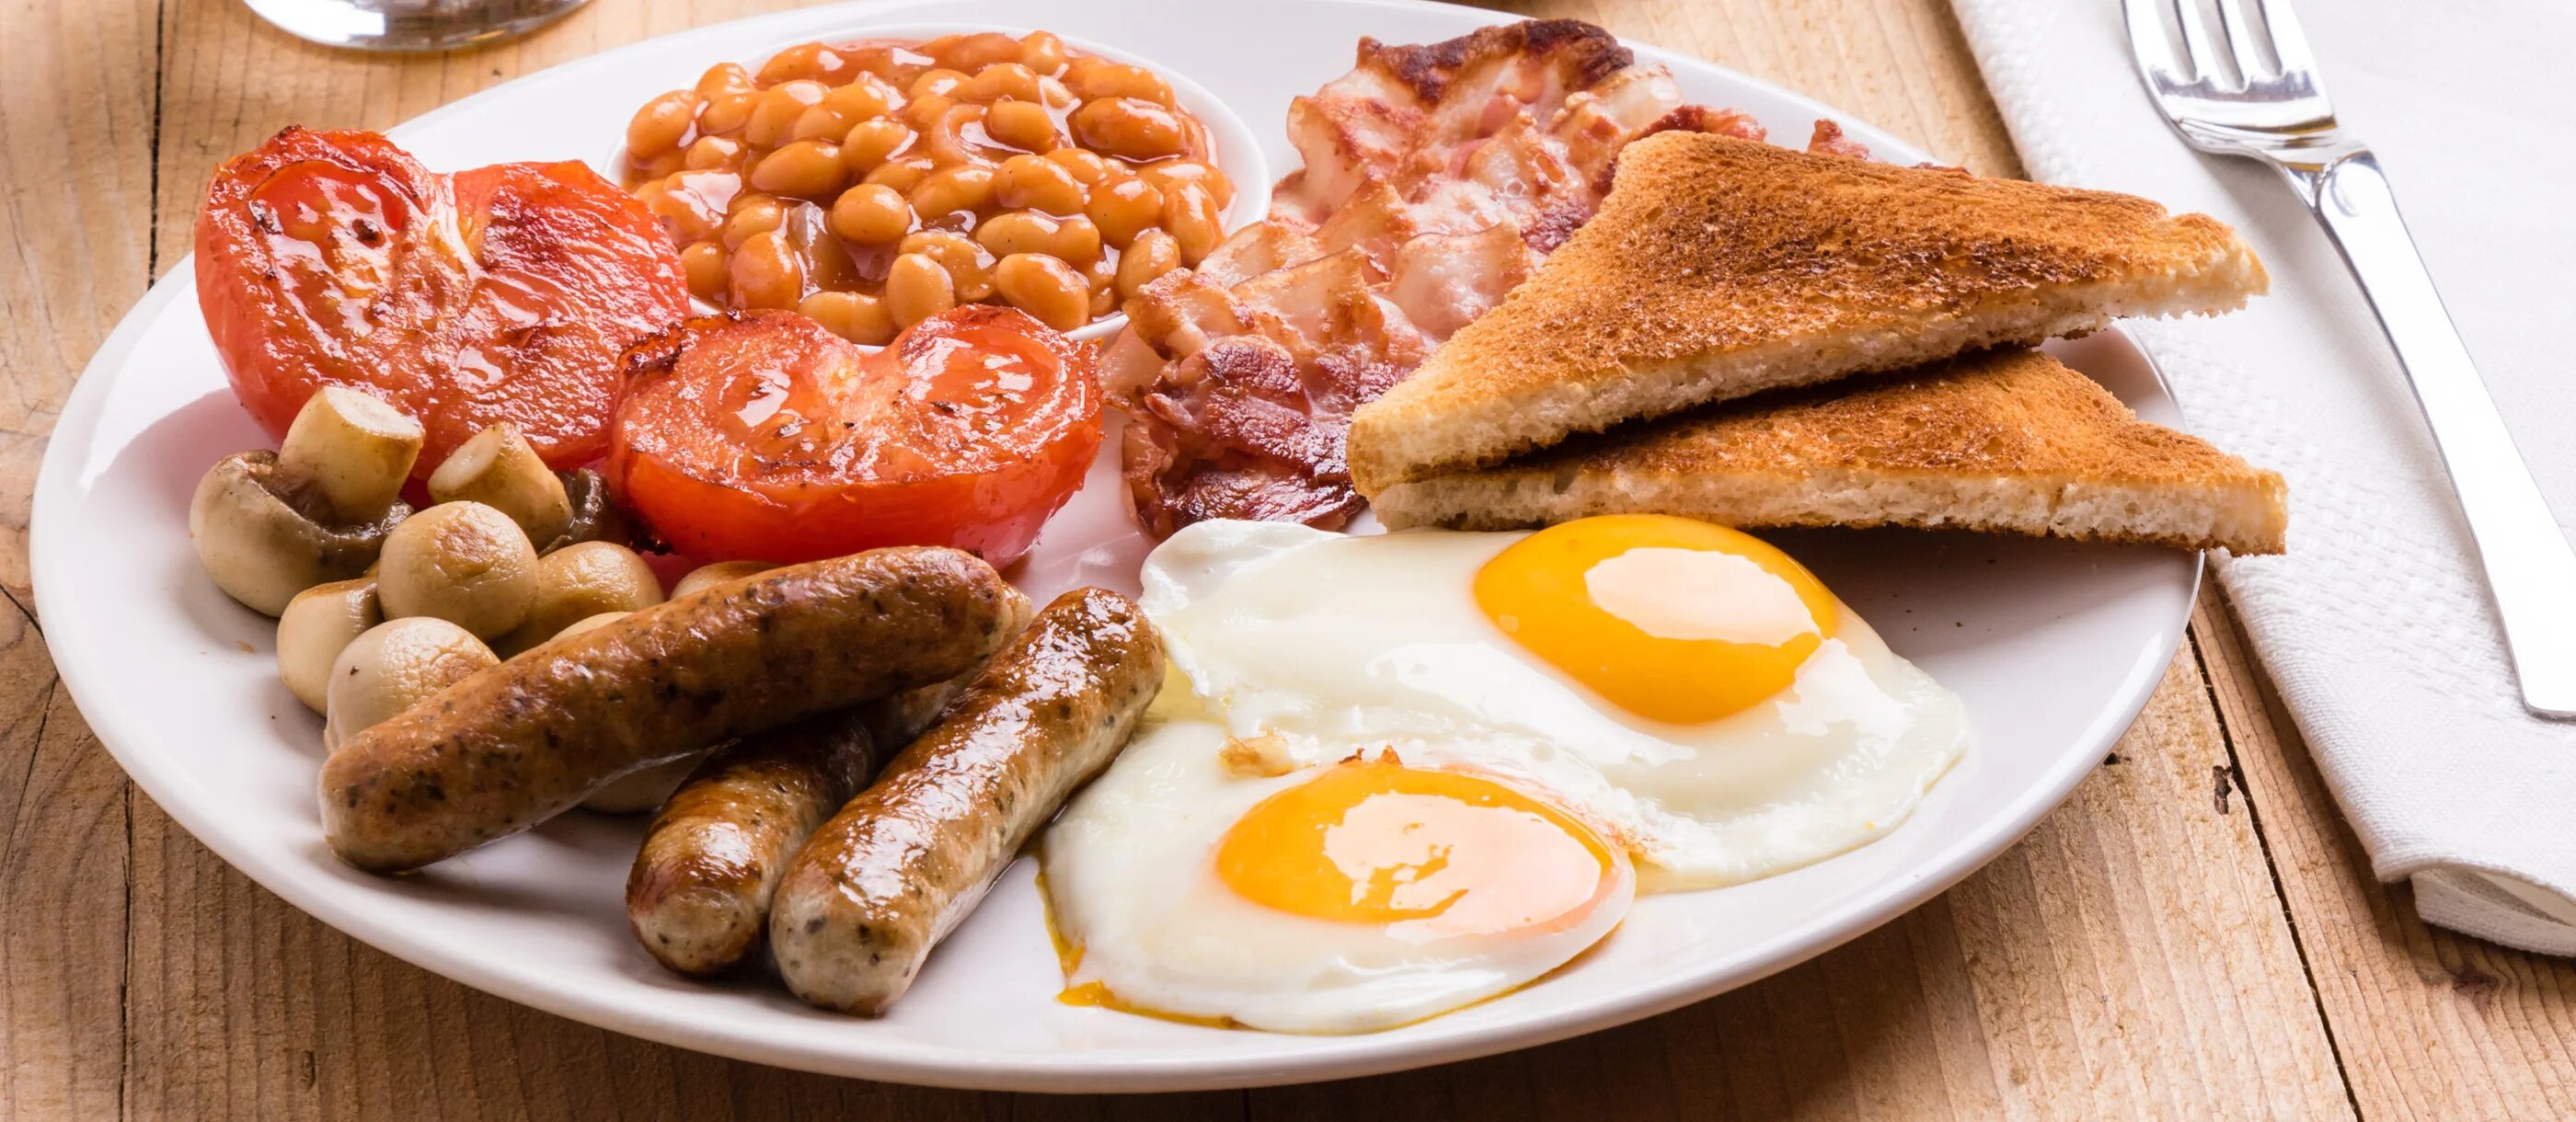 Инглиш брекфаст. Бритиш Брекфаст. Английский завтрак. Традиционный английский завтрак. Завтрак в Великобритании.